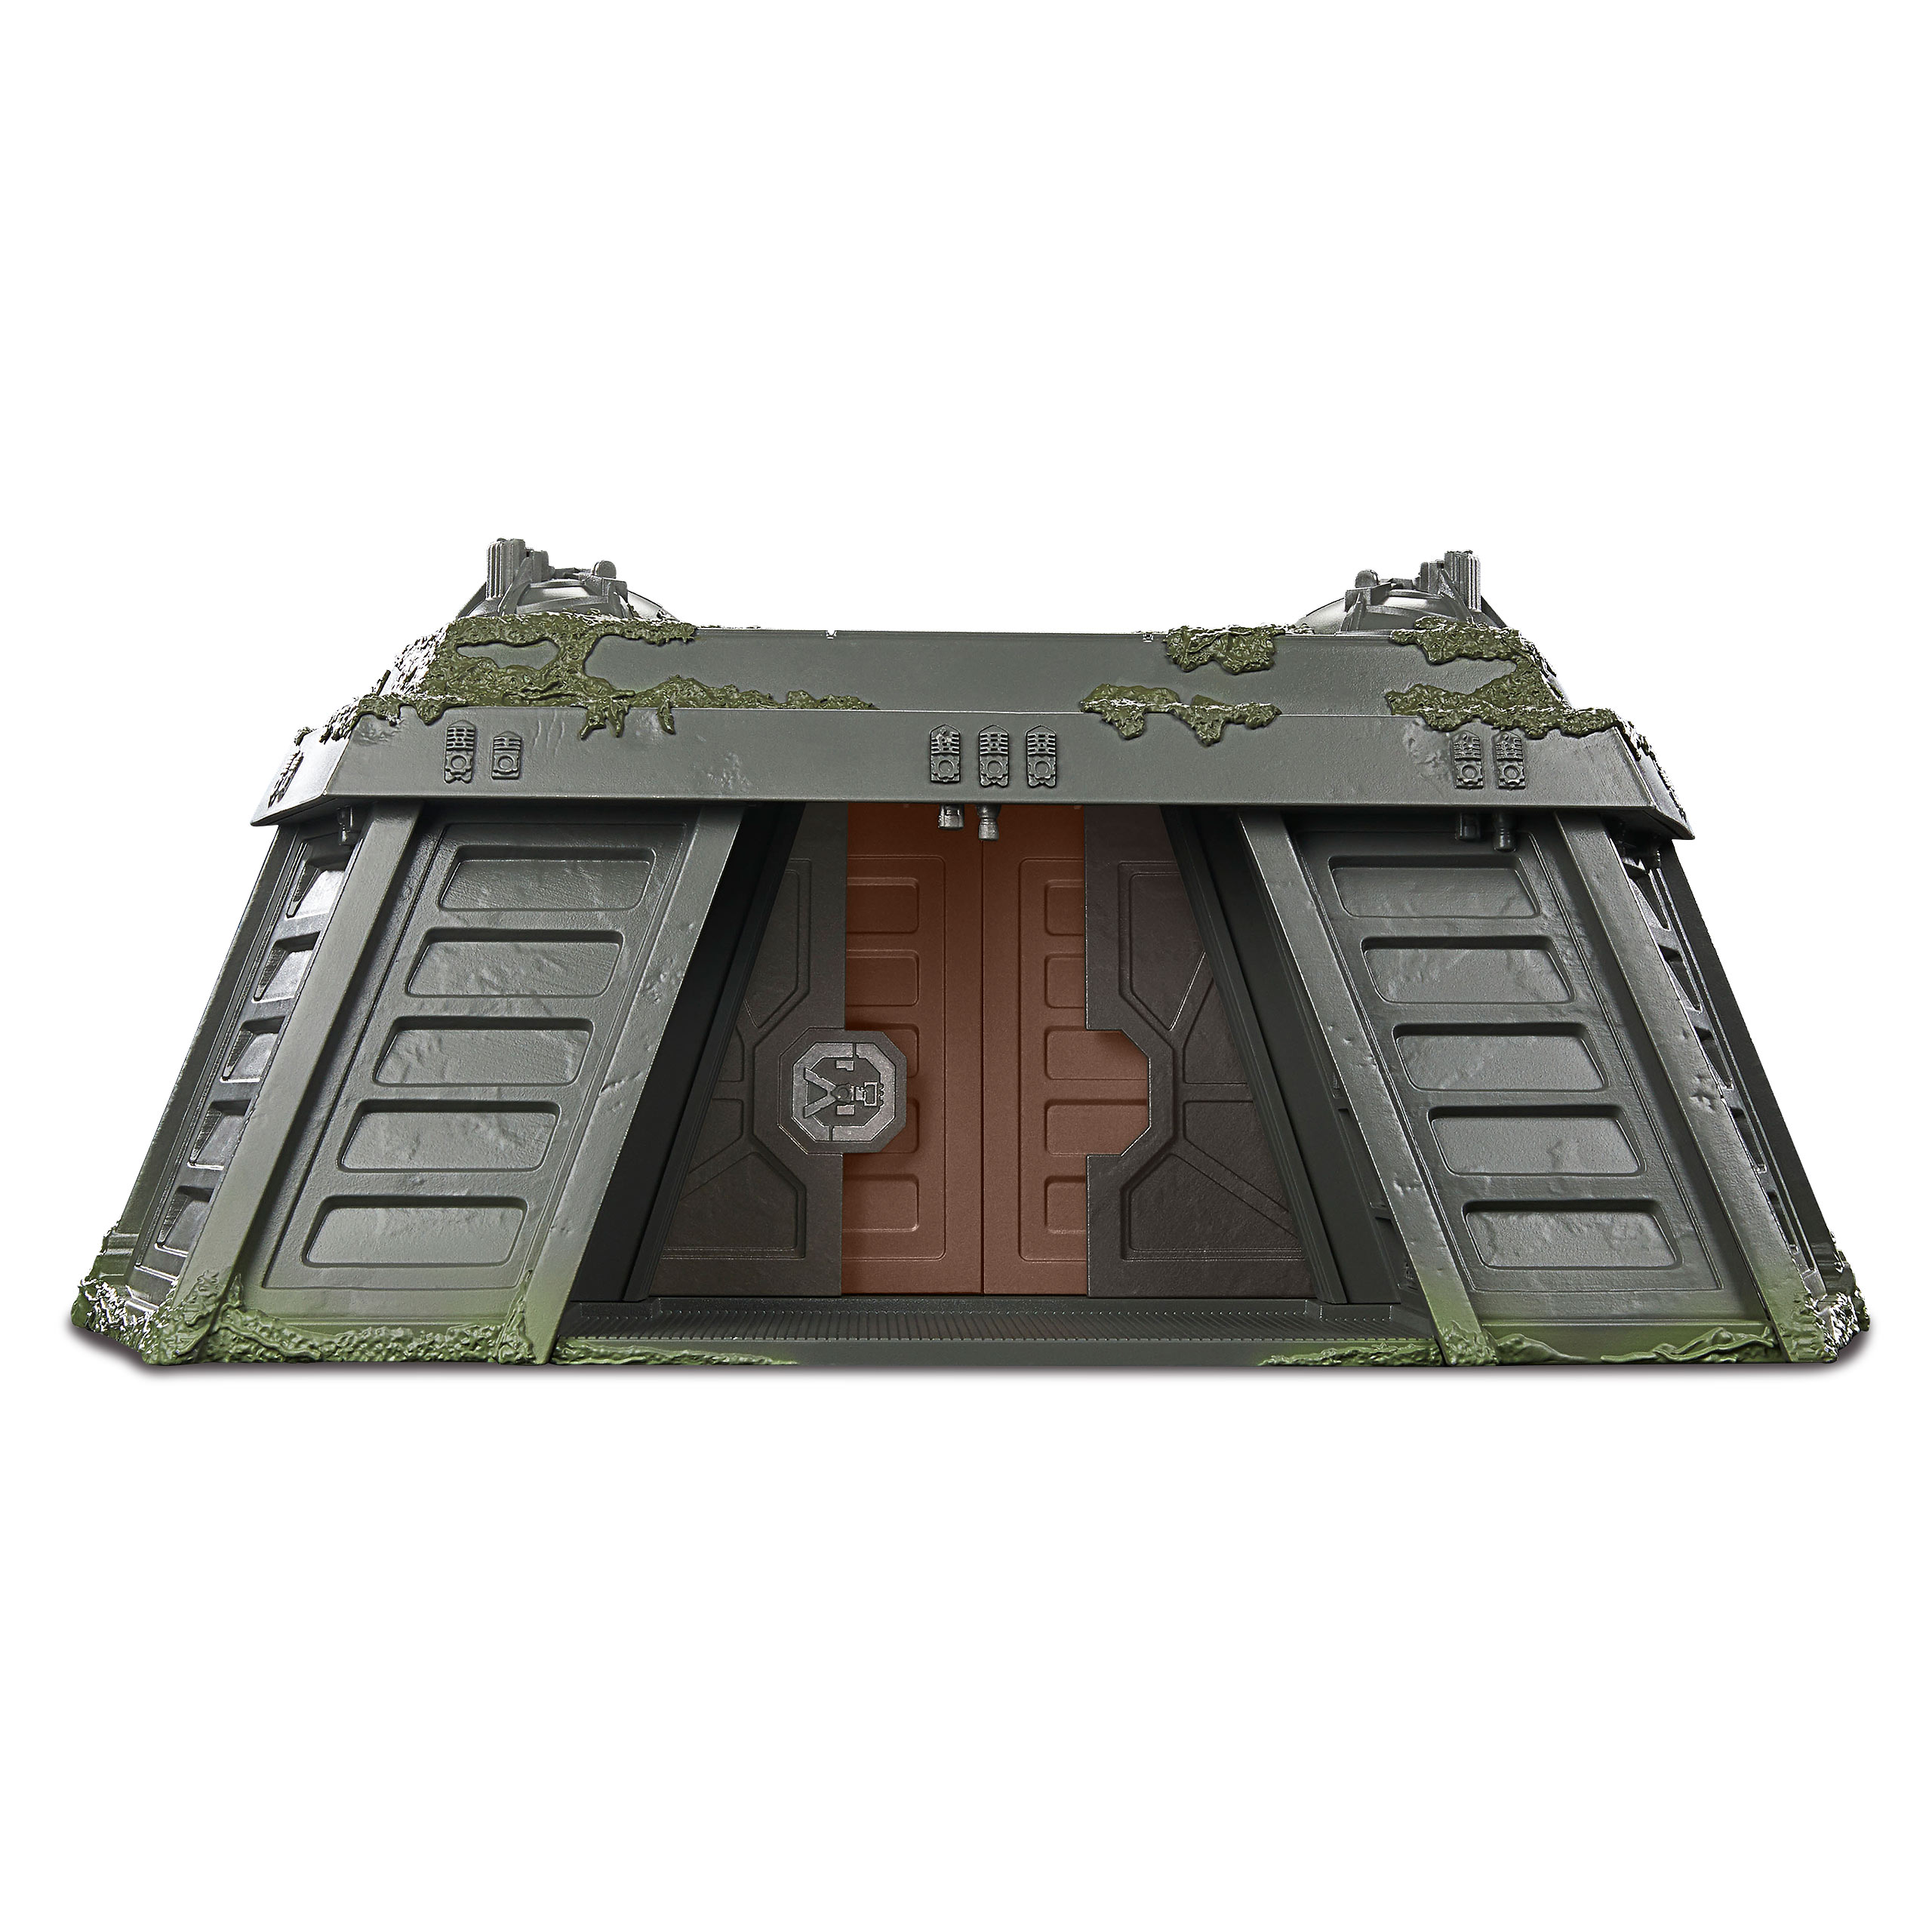 Star Wars - Endor Bunker mit Endor Rebel Spielset